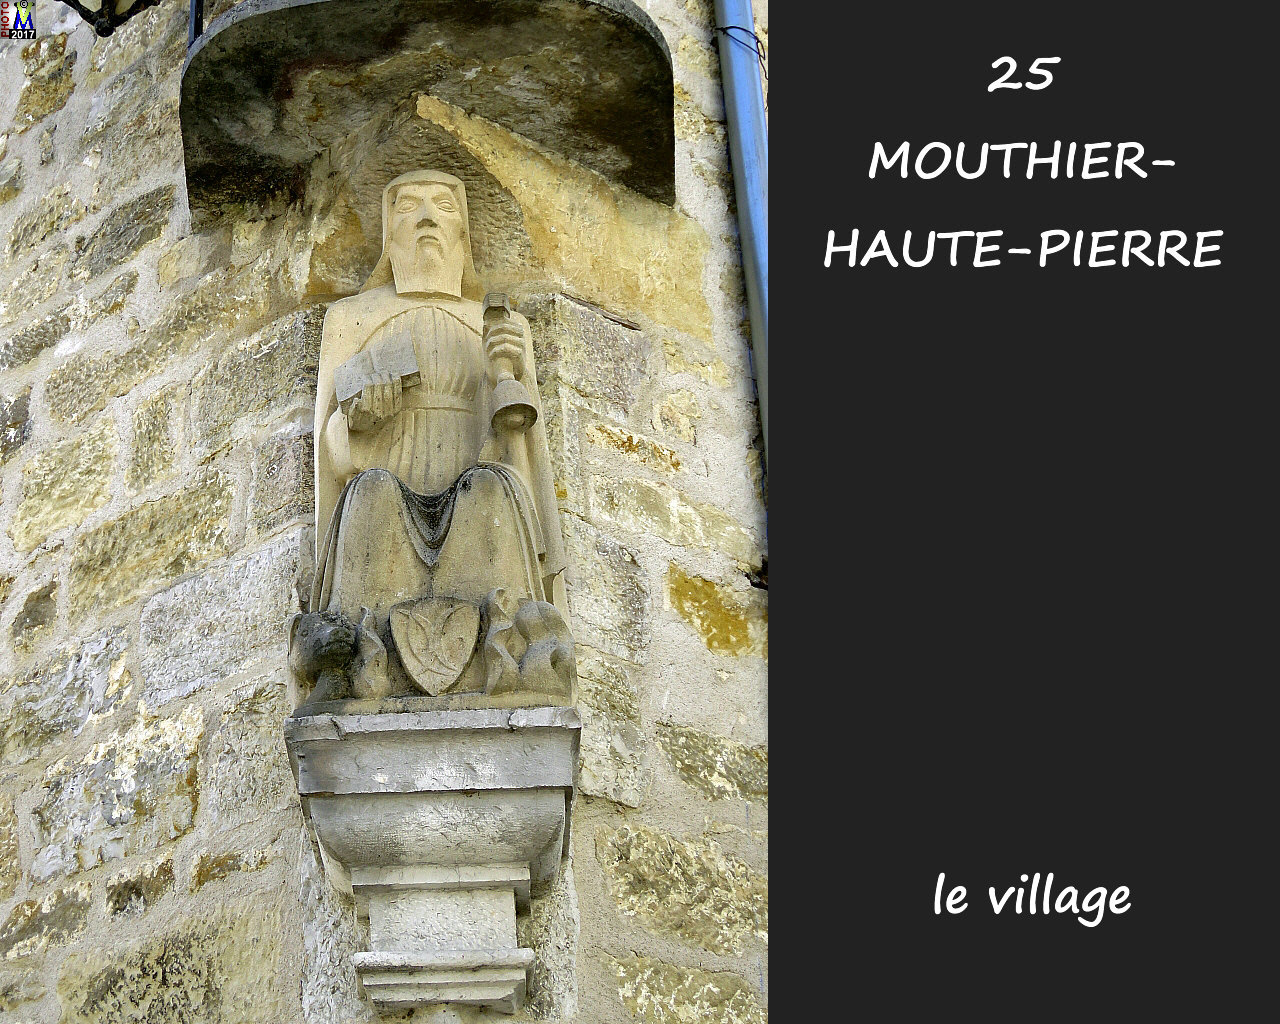 25MOUTHIER-HAUTE-PIERRE_village_134.JPG